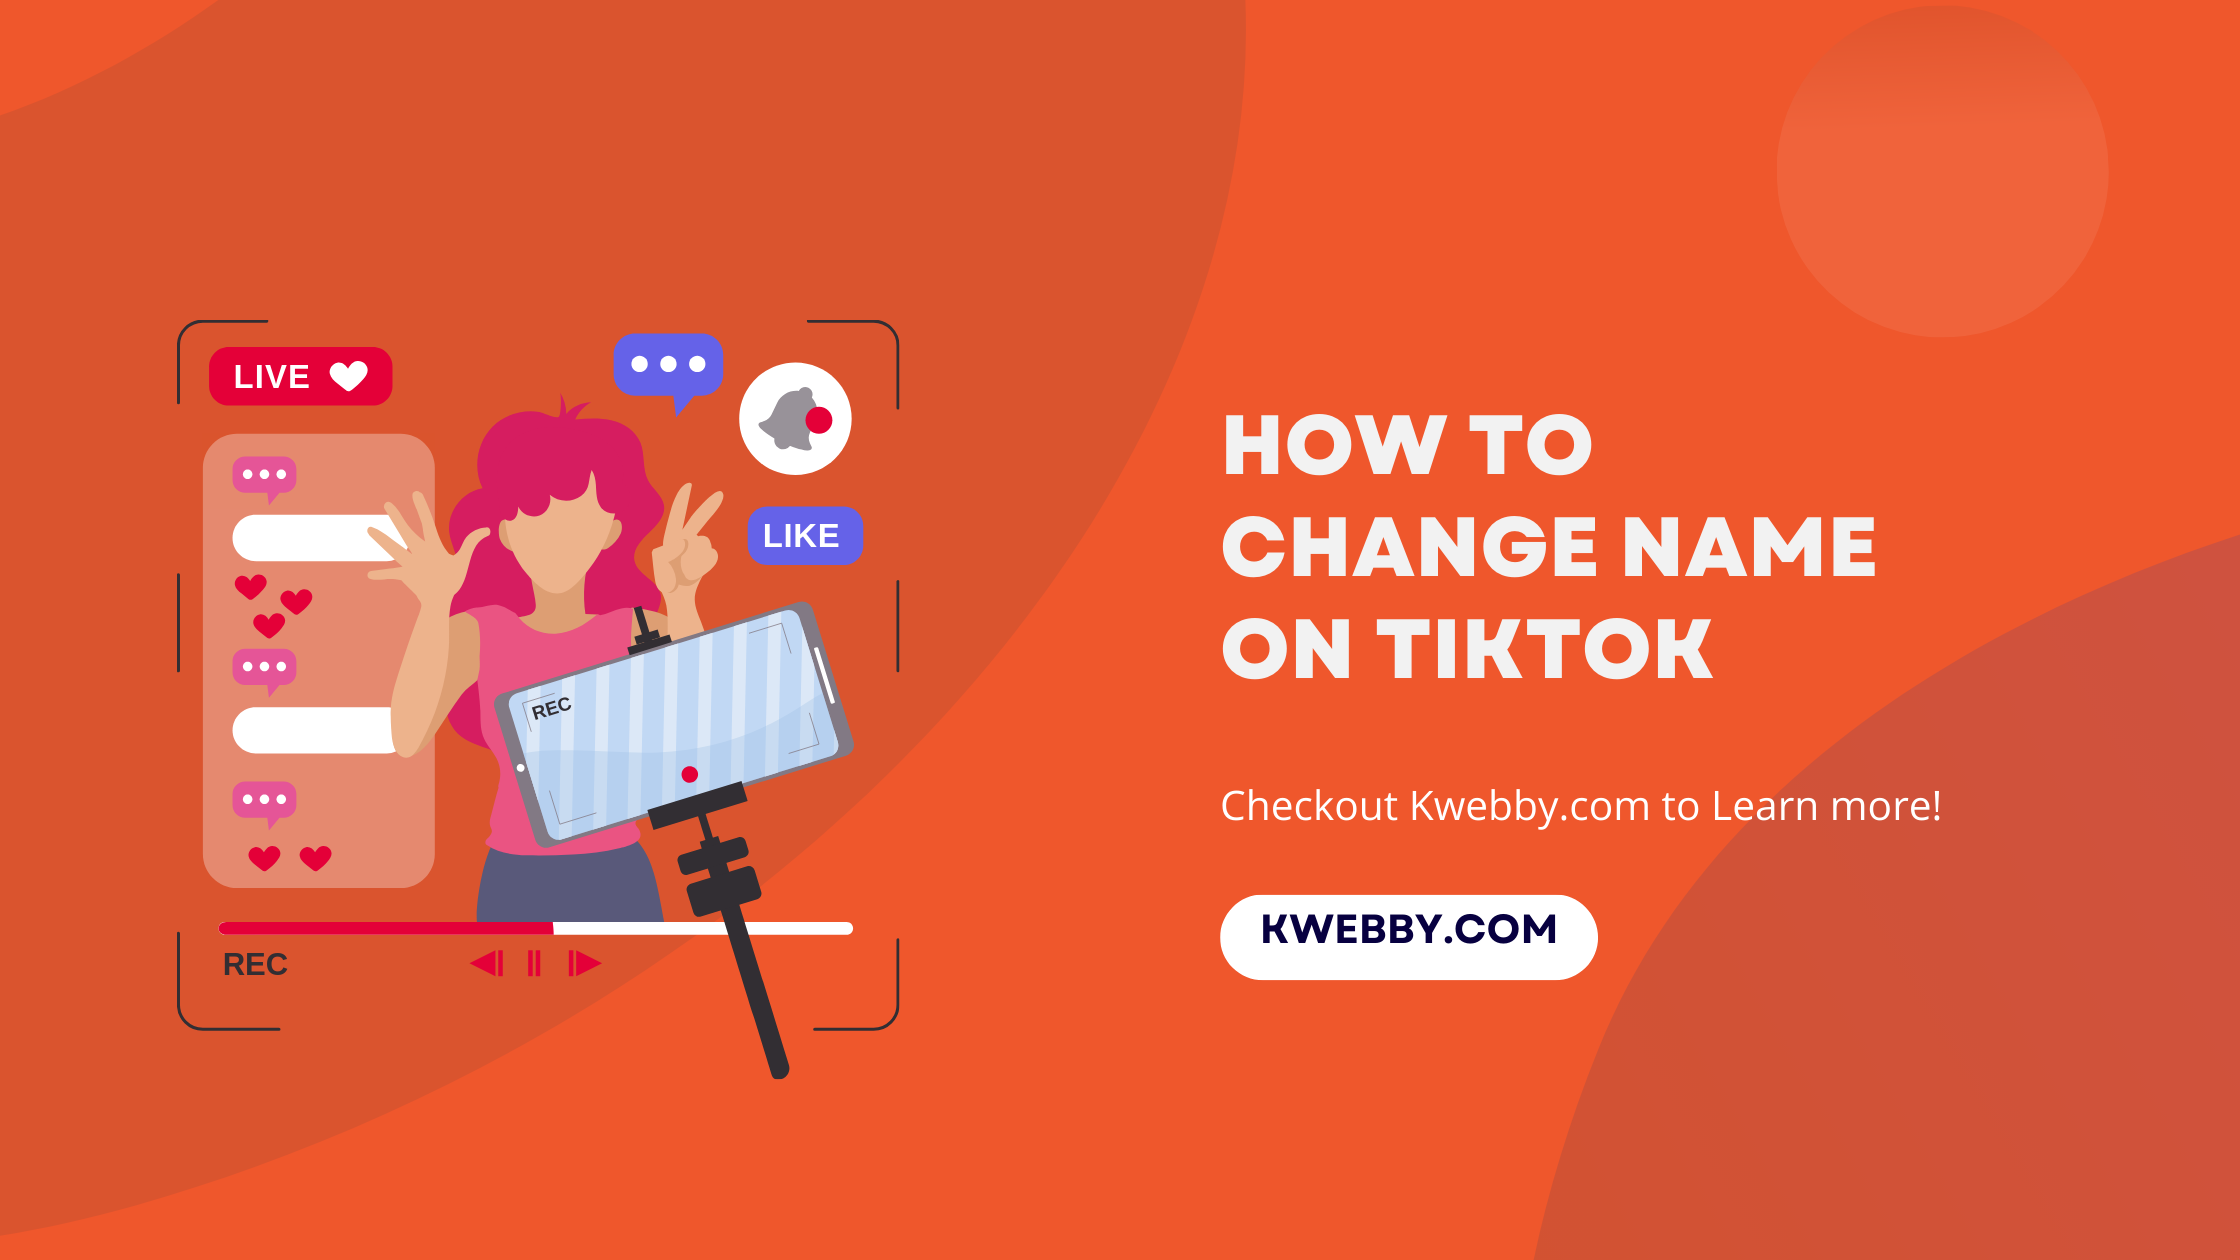 How to Change Name on Tiktok